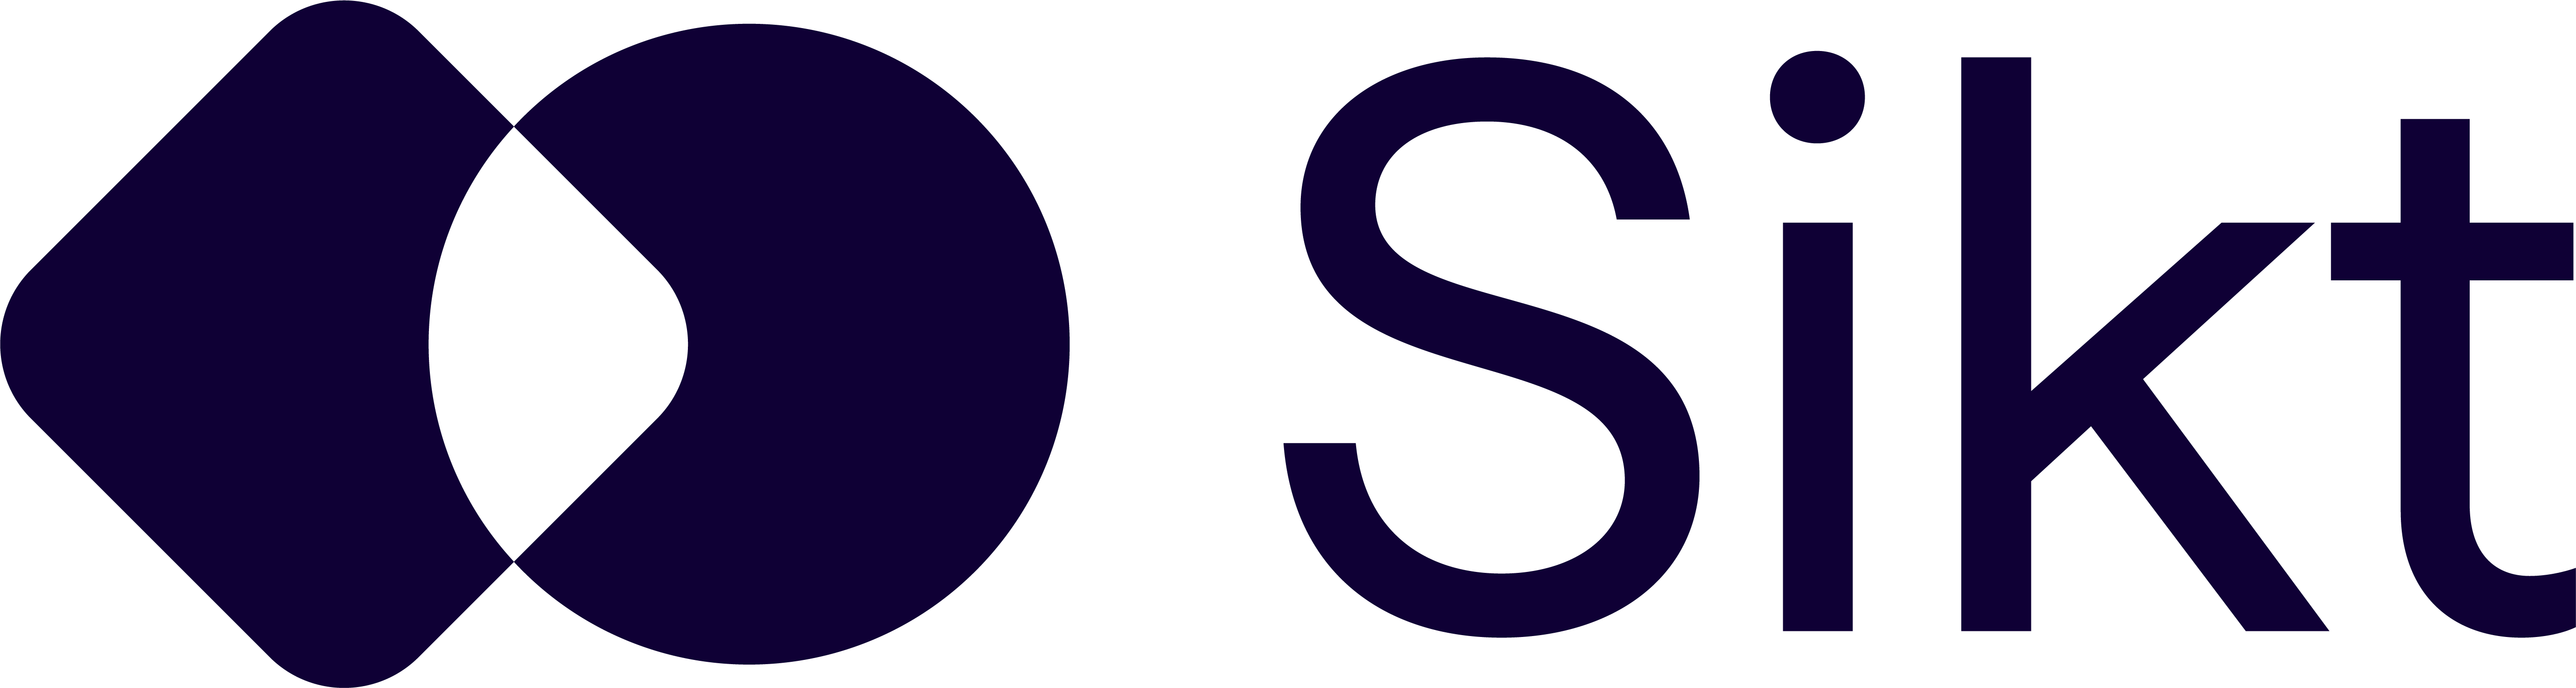 Mørkeblå logo med skriften Sikt.